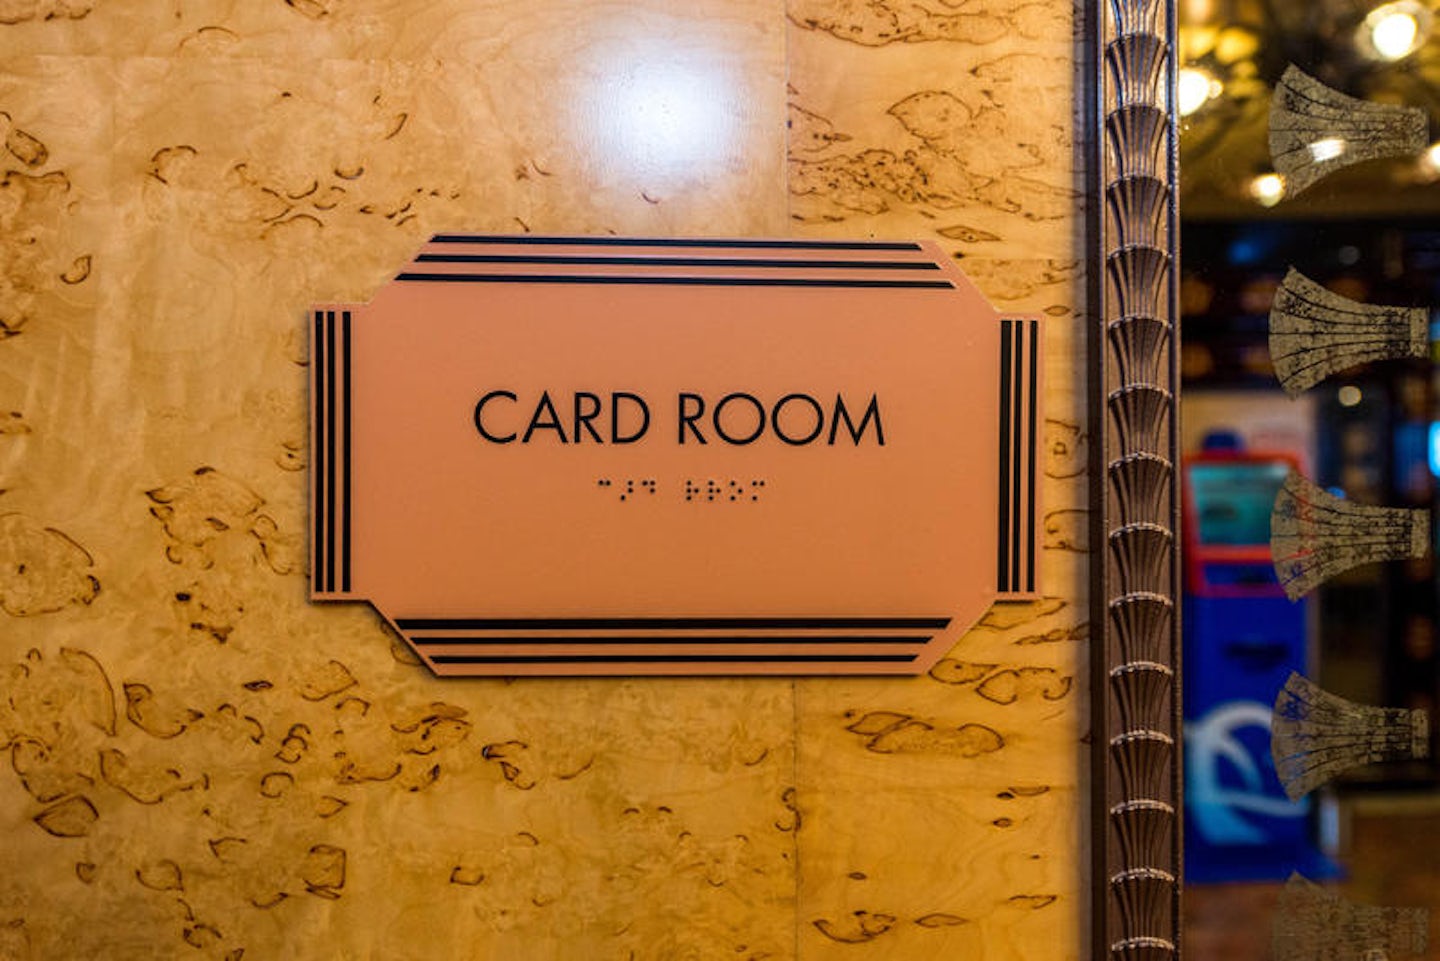 Card Room on Carnival Legend